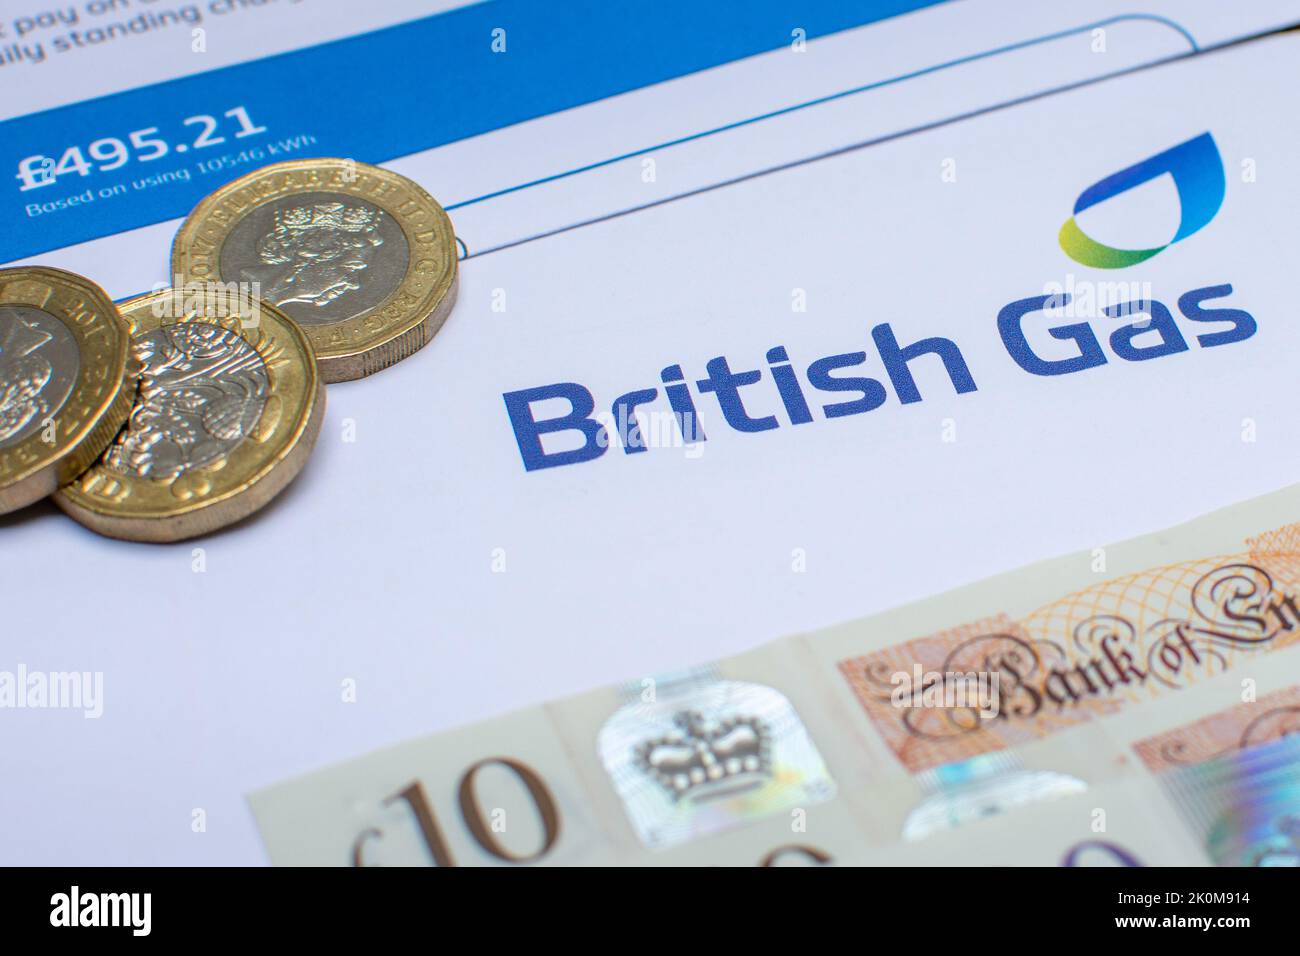 Eine britische Gasrechnung mit britischer Währung. Die Lebenshaltungskosten und die Inflation mit steigenden Preisen wirken sich auf viele Menschen aus. Stockfoto